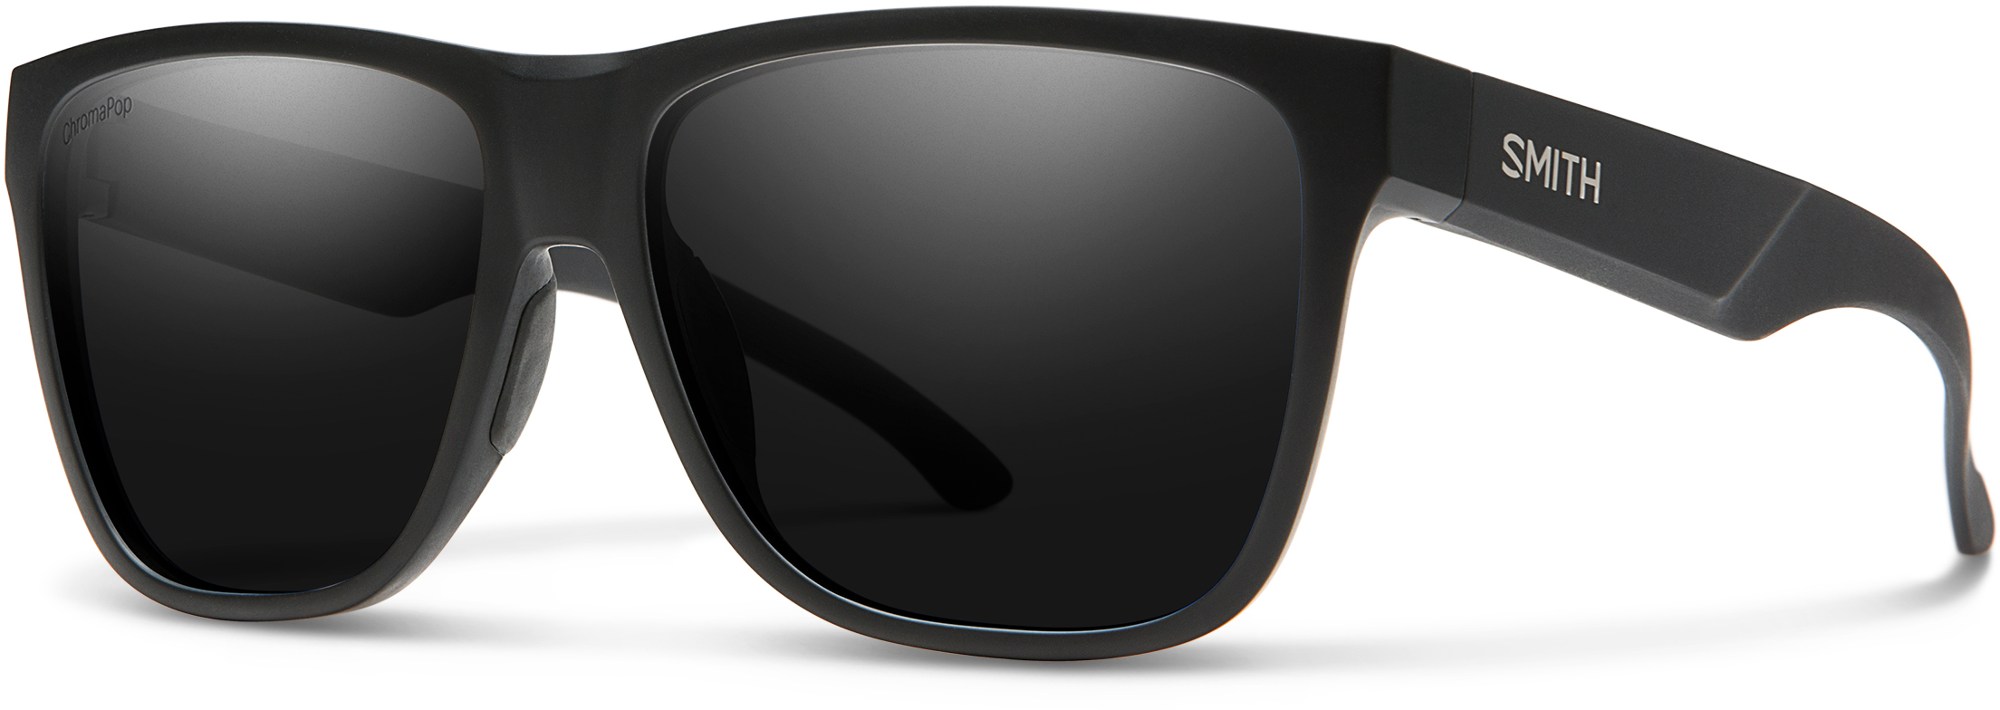 Поляризованные солнцезащитные очки Lowdown XL 2 ChromaPop Smith, черный smith